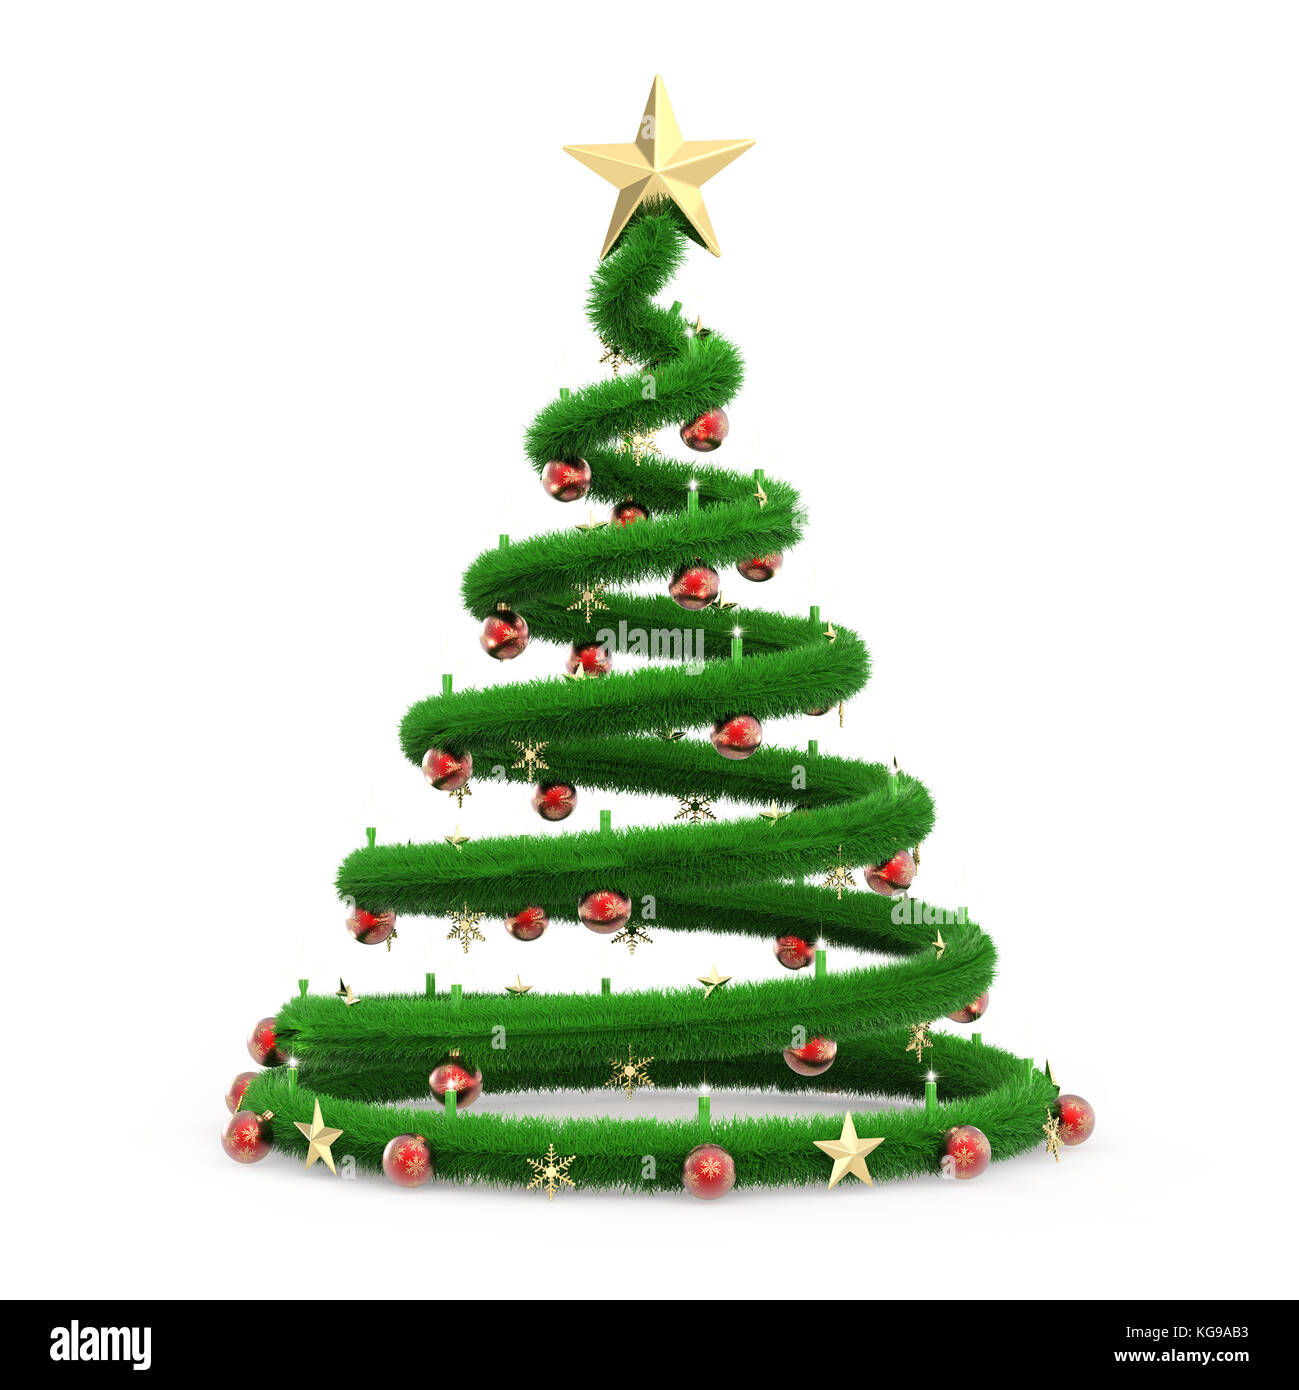 Albero Di Natale 3d.Albero Di Natale Isolato Su Sfondo Bianco Del Rendering 3d Foto Stock Alamy